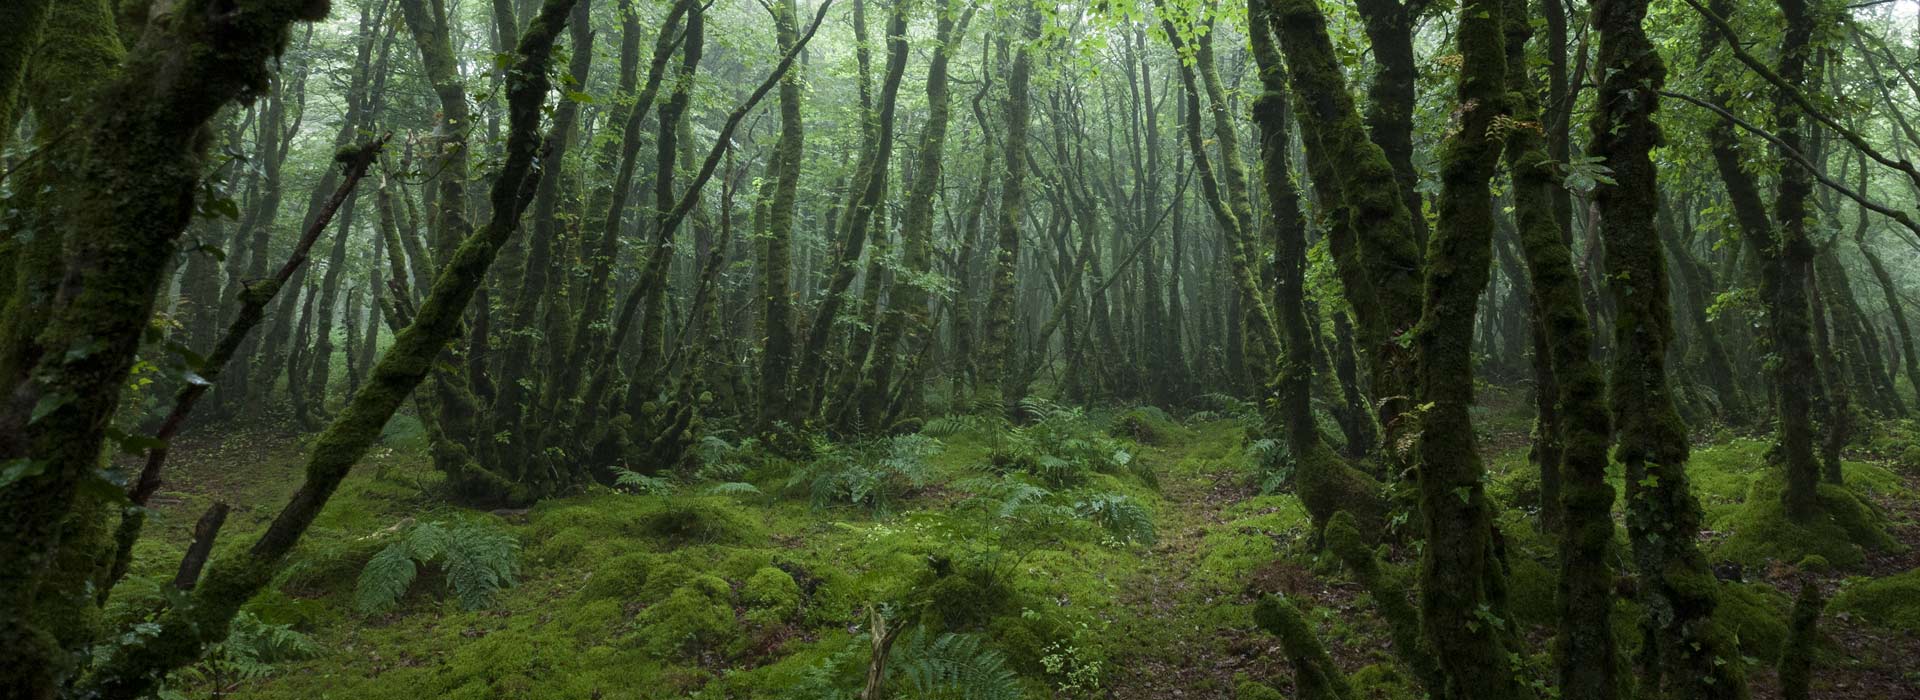 Un chemin dans une forêt brumeuse où lon peut se relier et communiquer avec les arbres